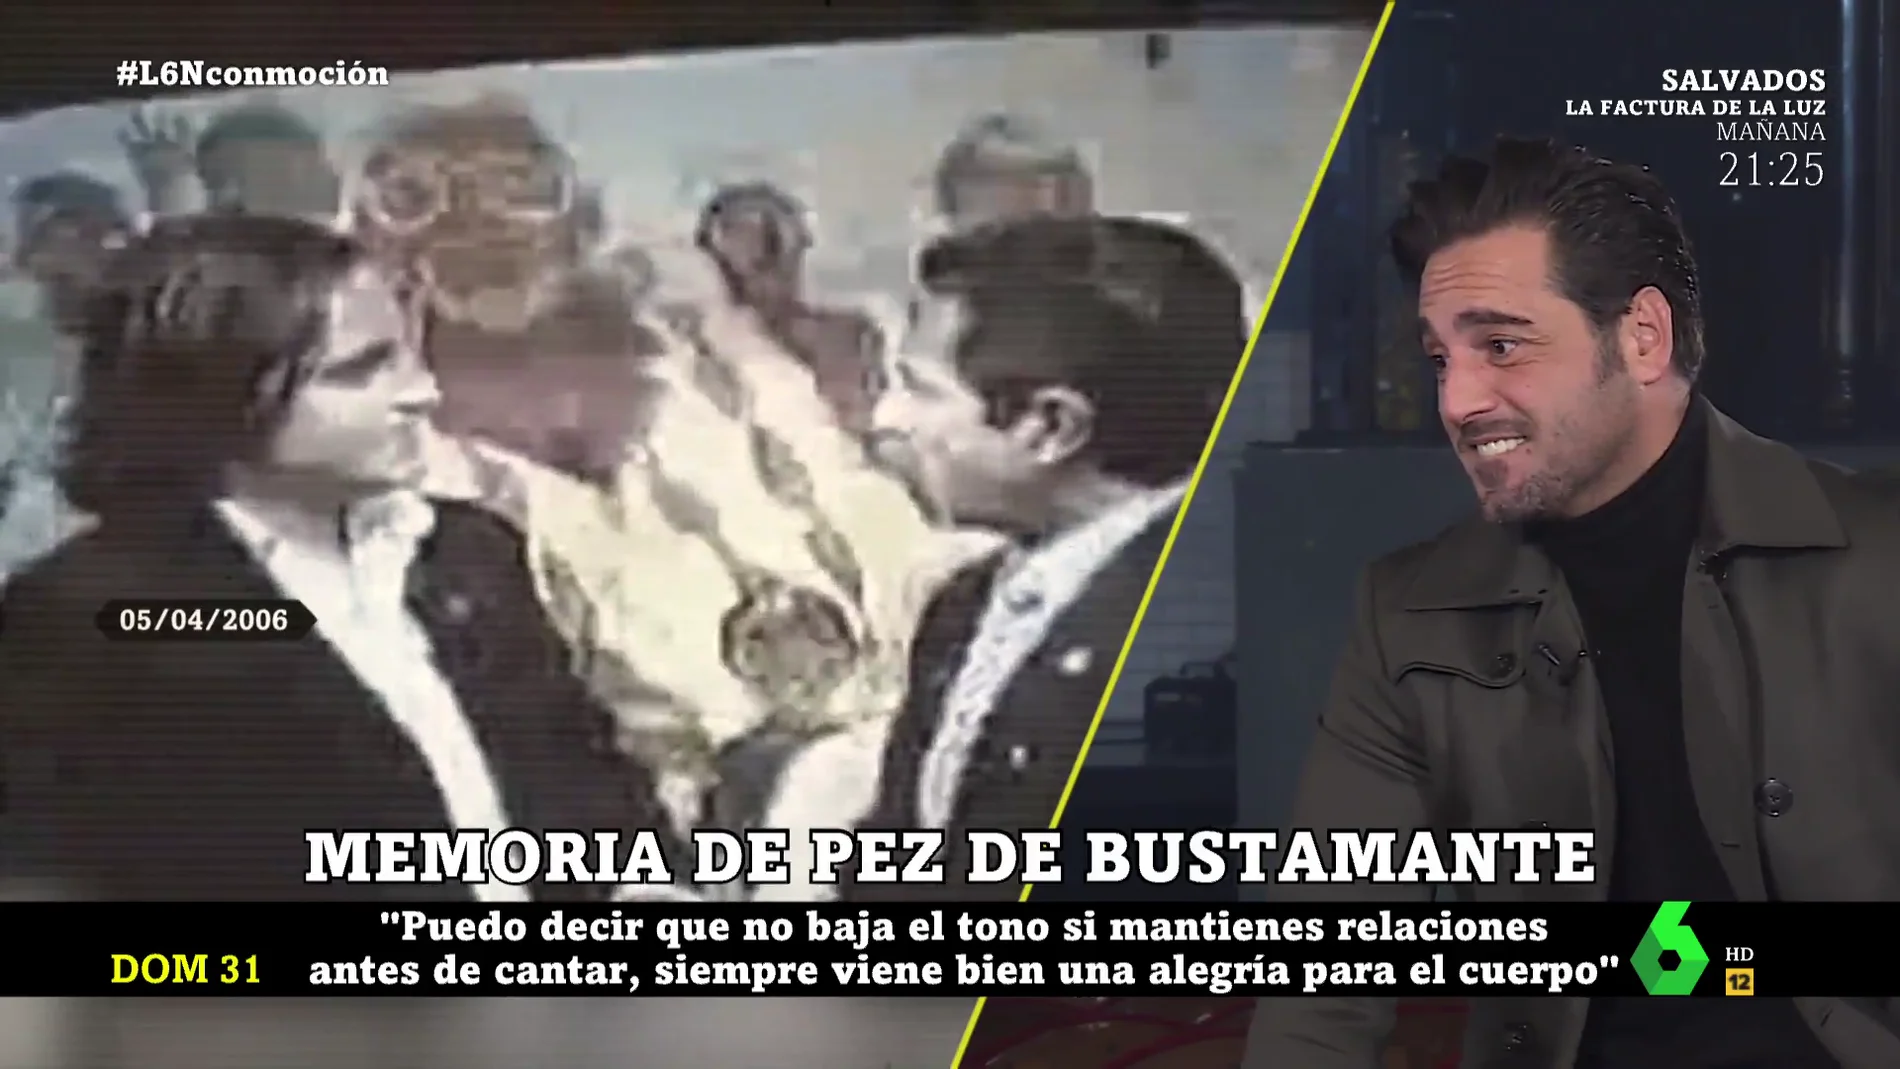 La estrecha relación de David Bustamante con Miguel Ángel Revilla: "Se conocía desde pequeño con mi abuelo materno"